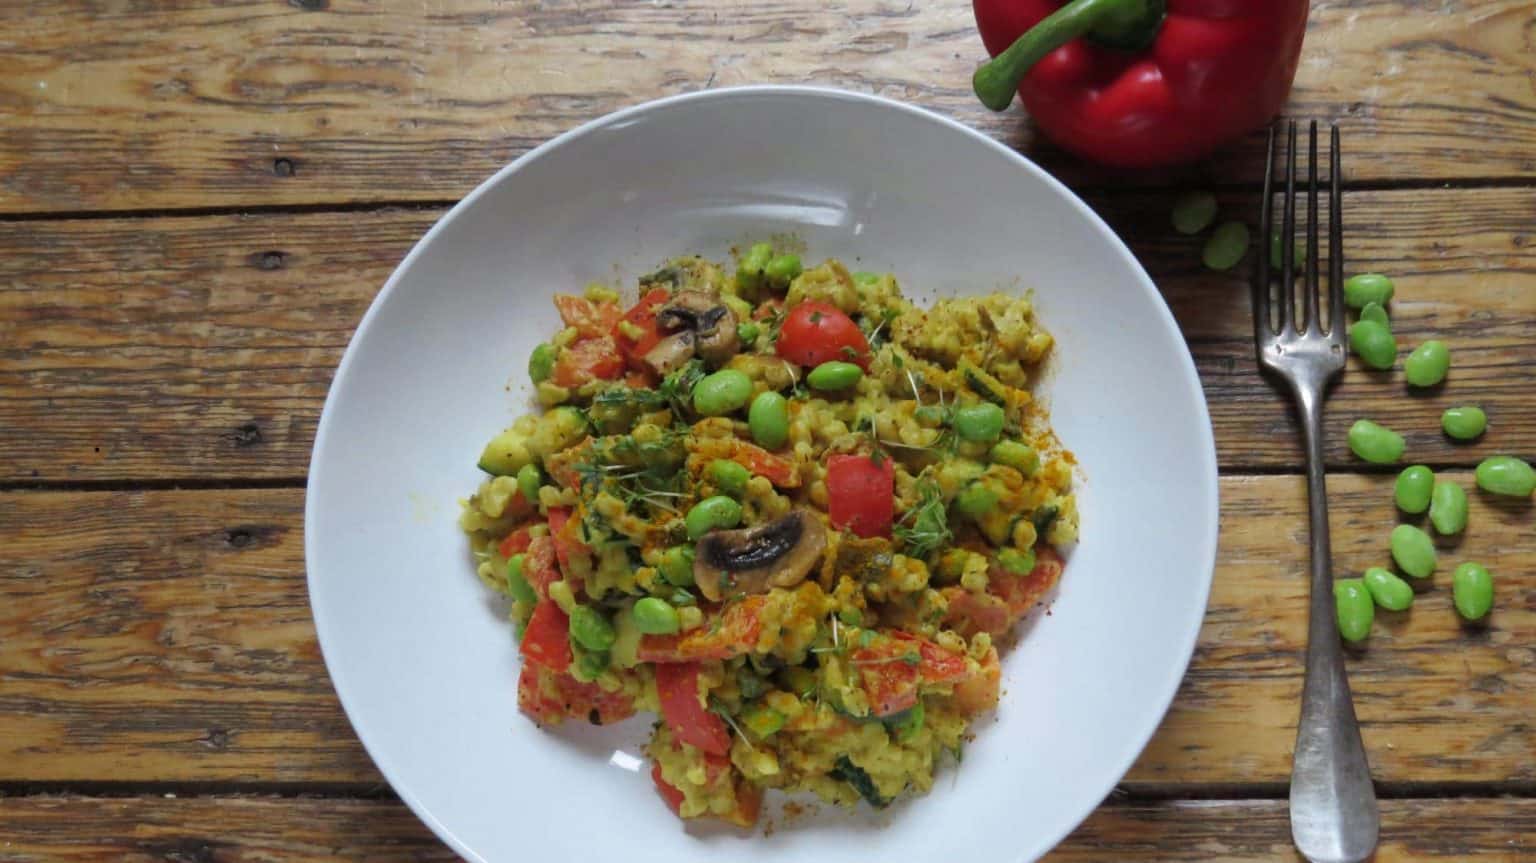 Gemüse-Eblypfanne mit Edamame und einer Cashew-Curry Sauce | Vegan Heaven